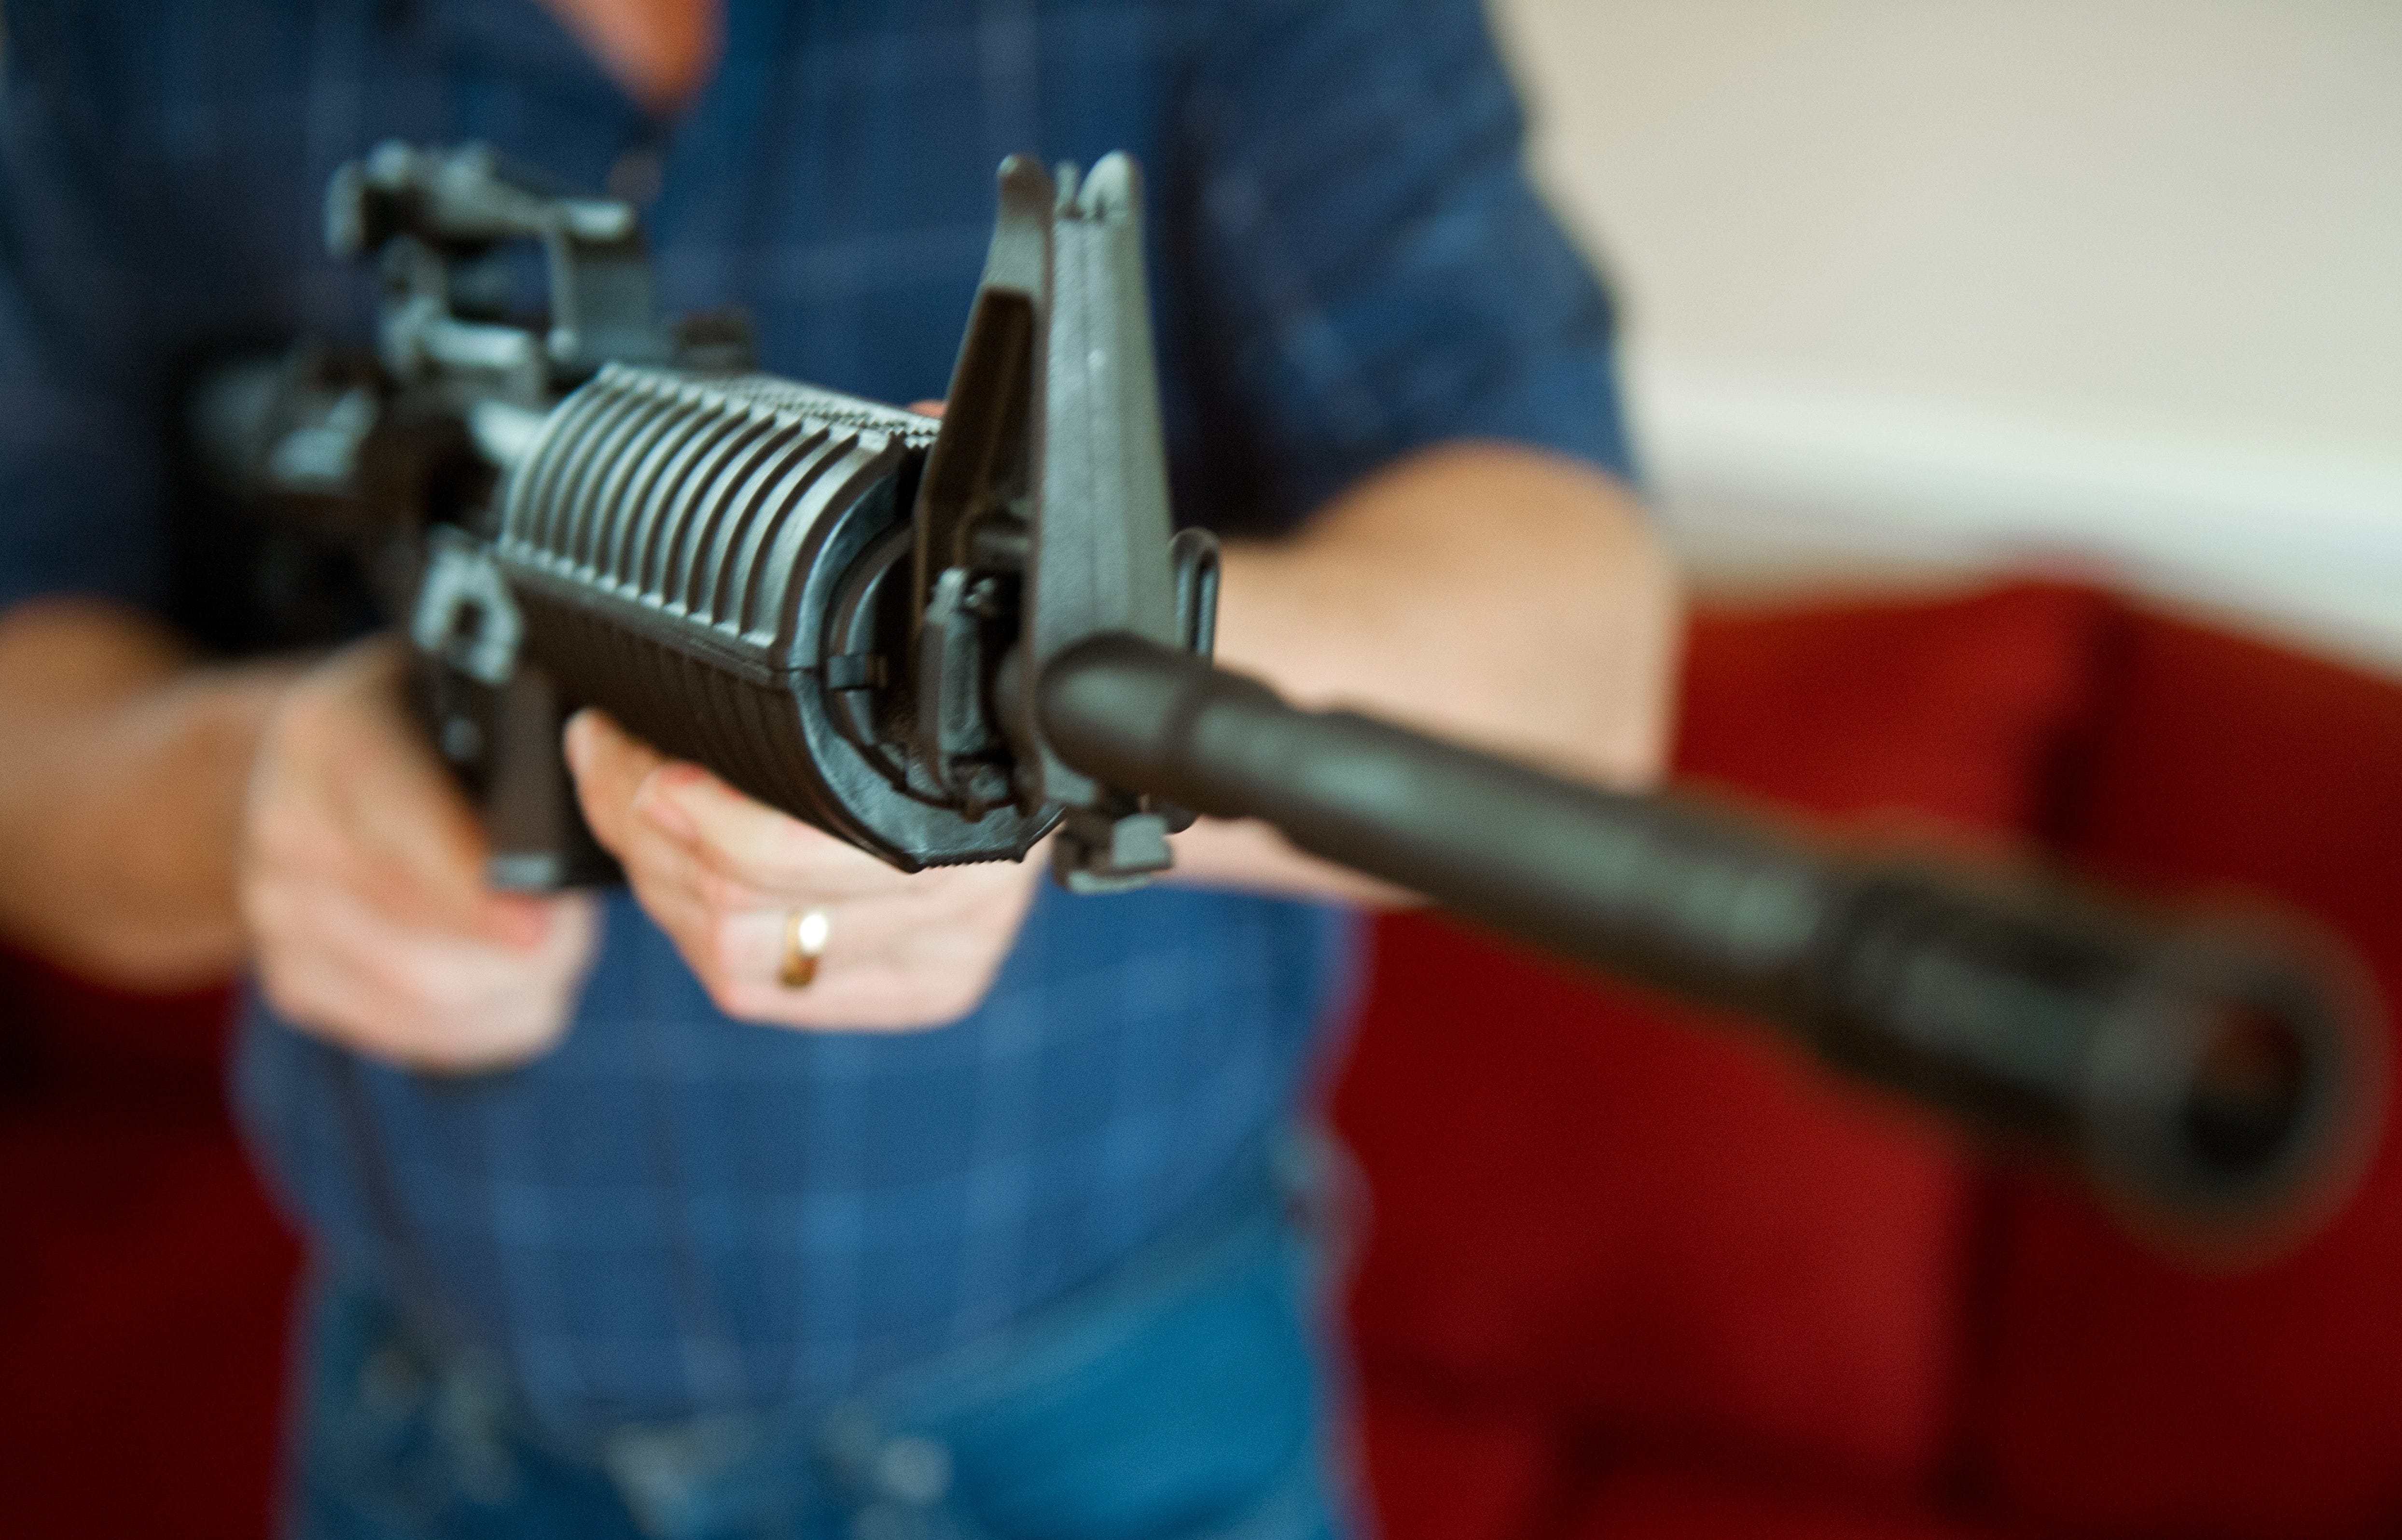 Colt suspends production of guns for civilian market